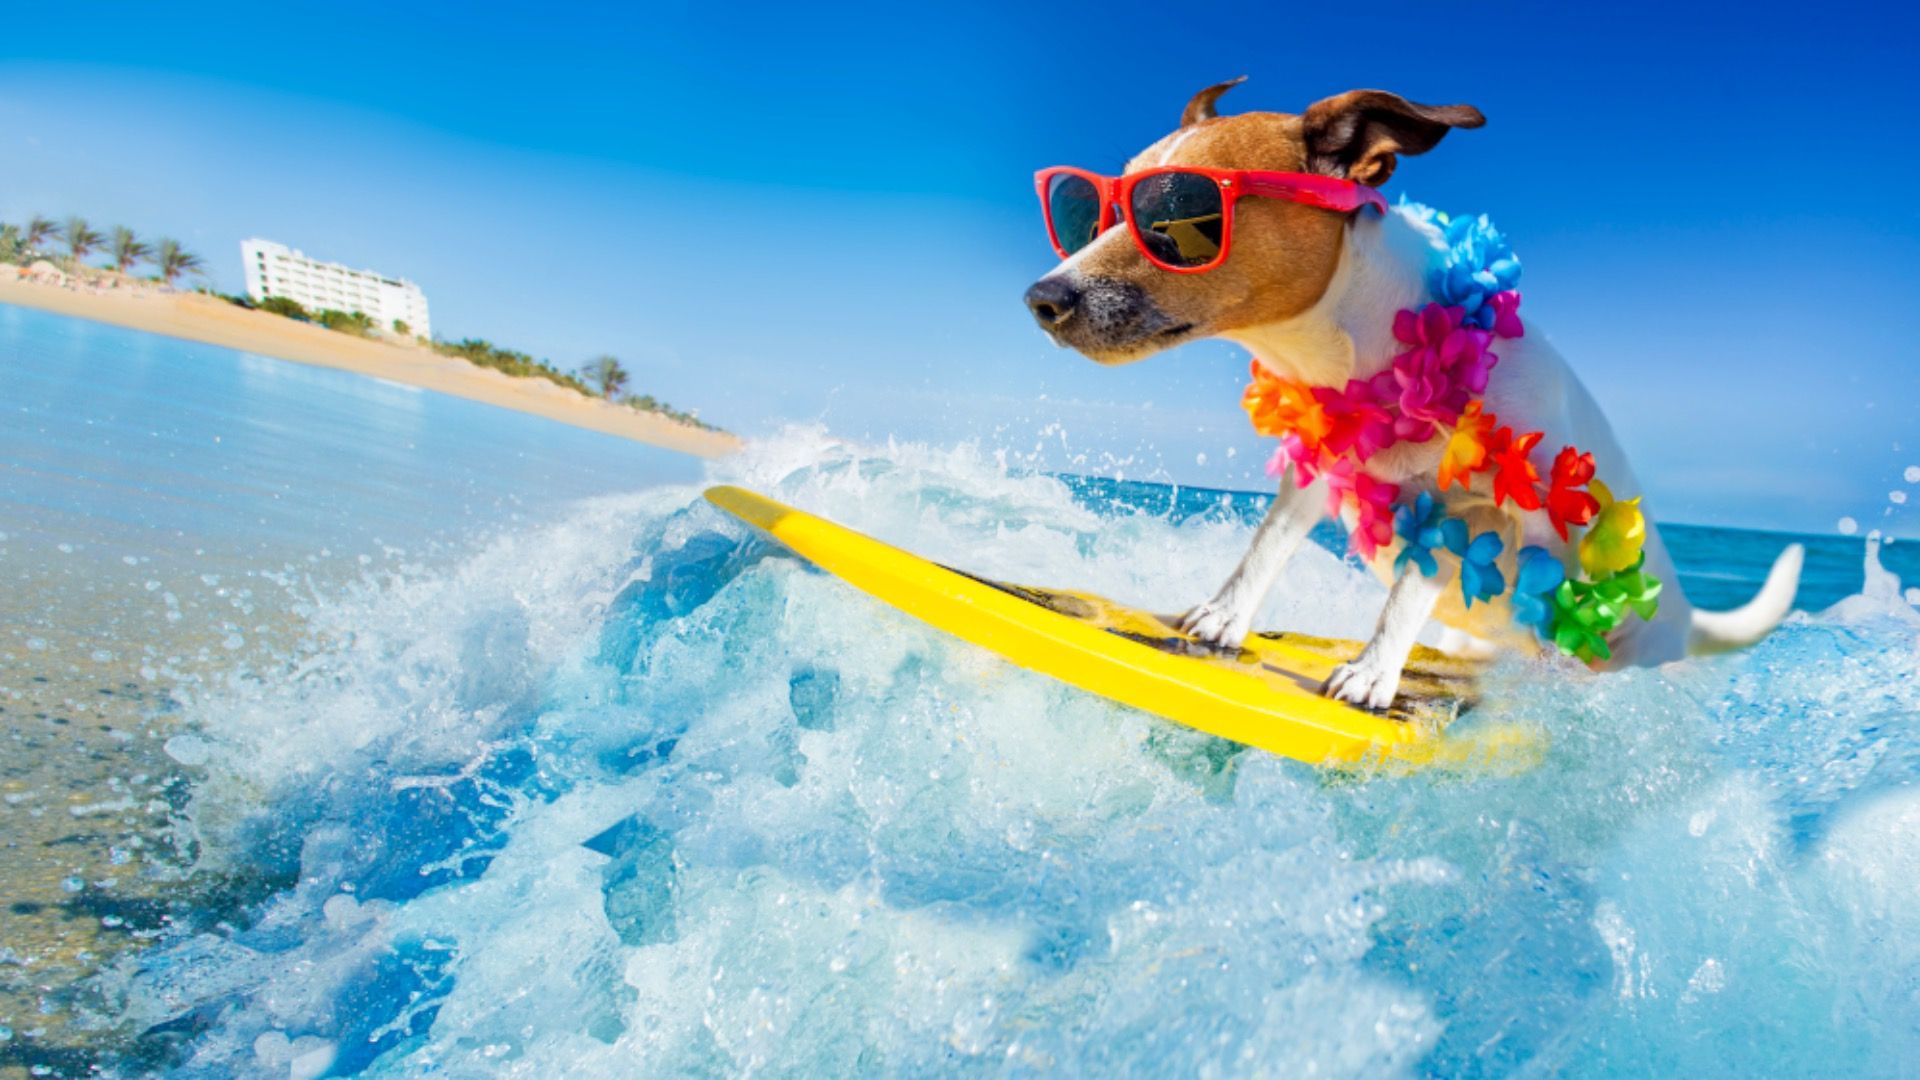 Dog riding surfboard in Hawaii, fun travel shot